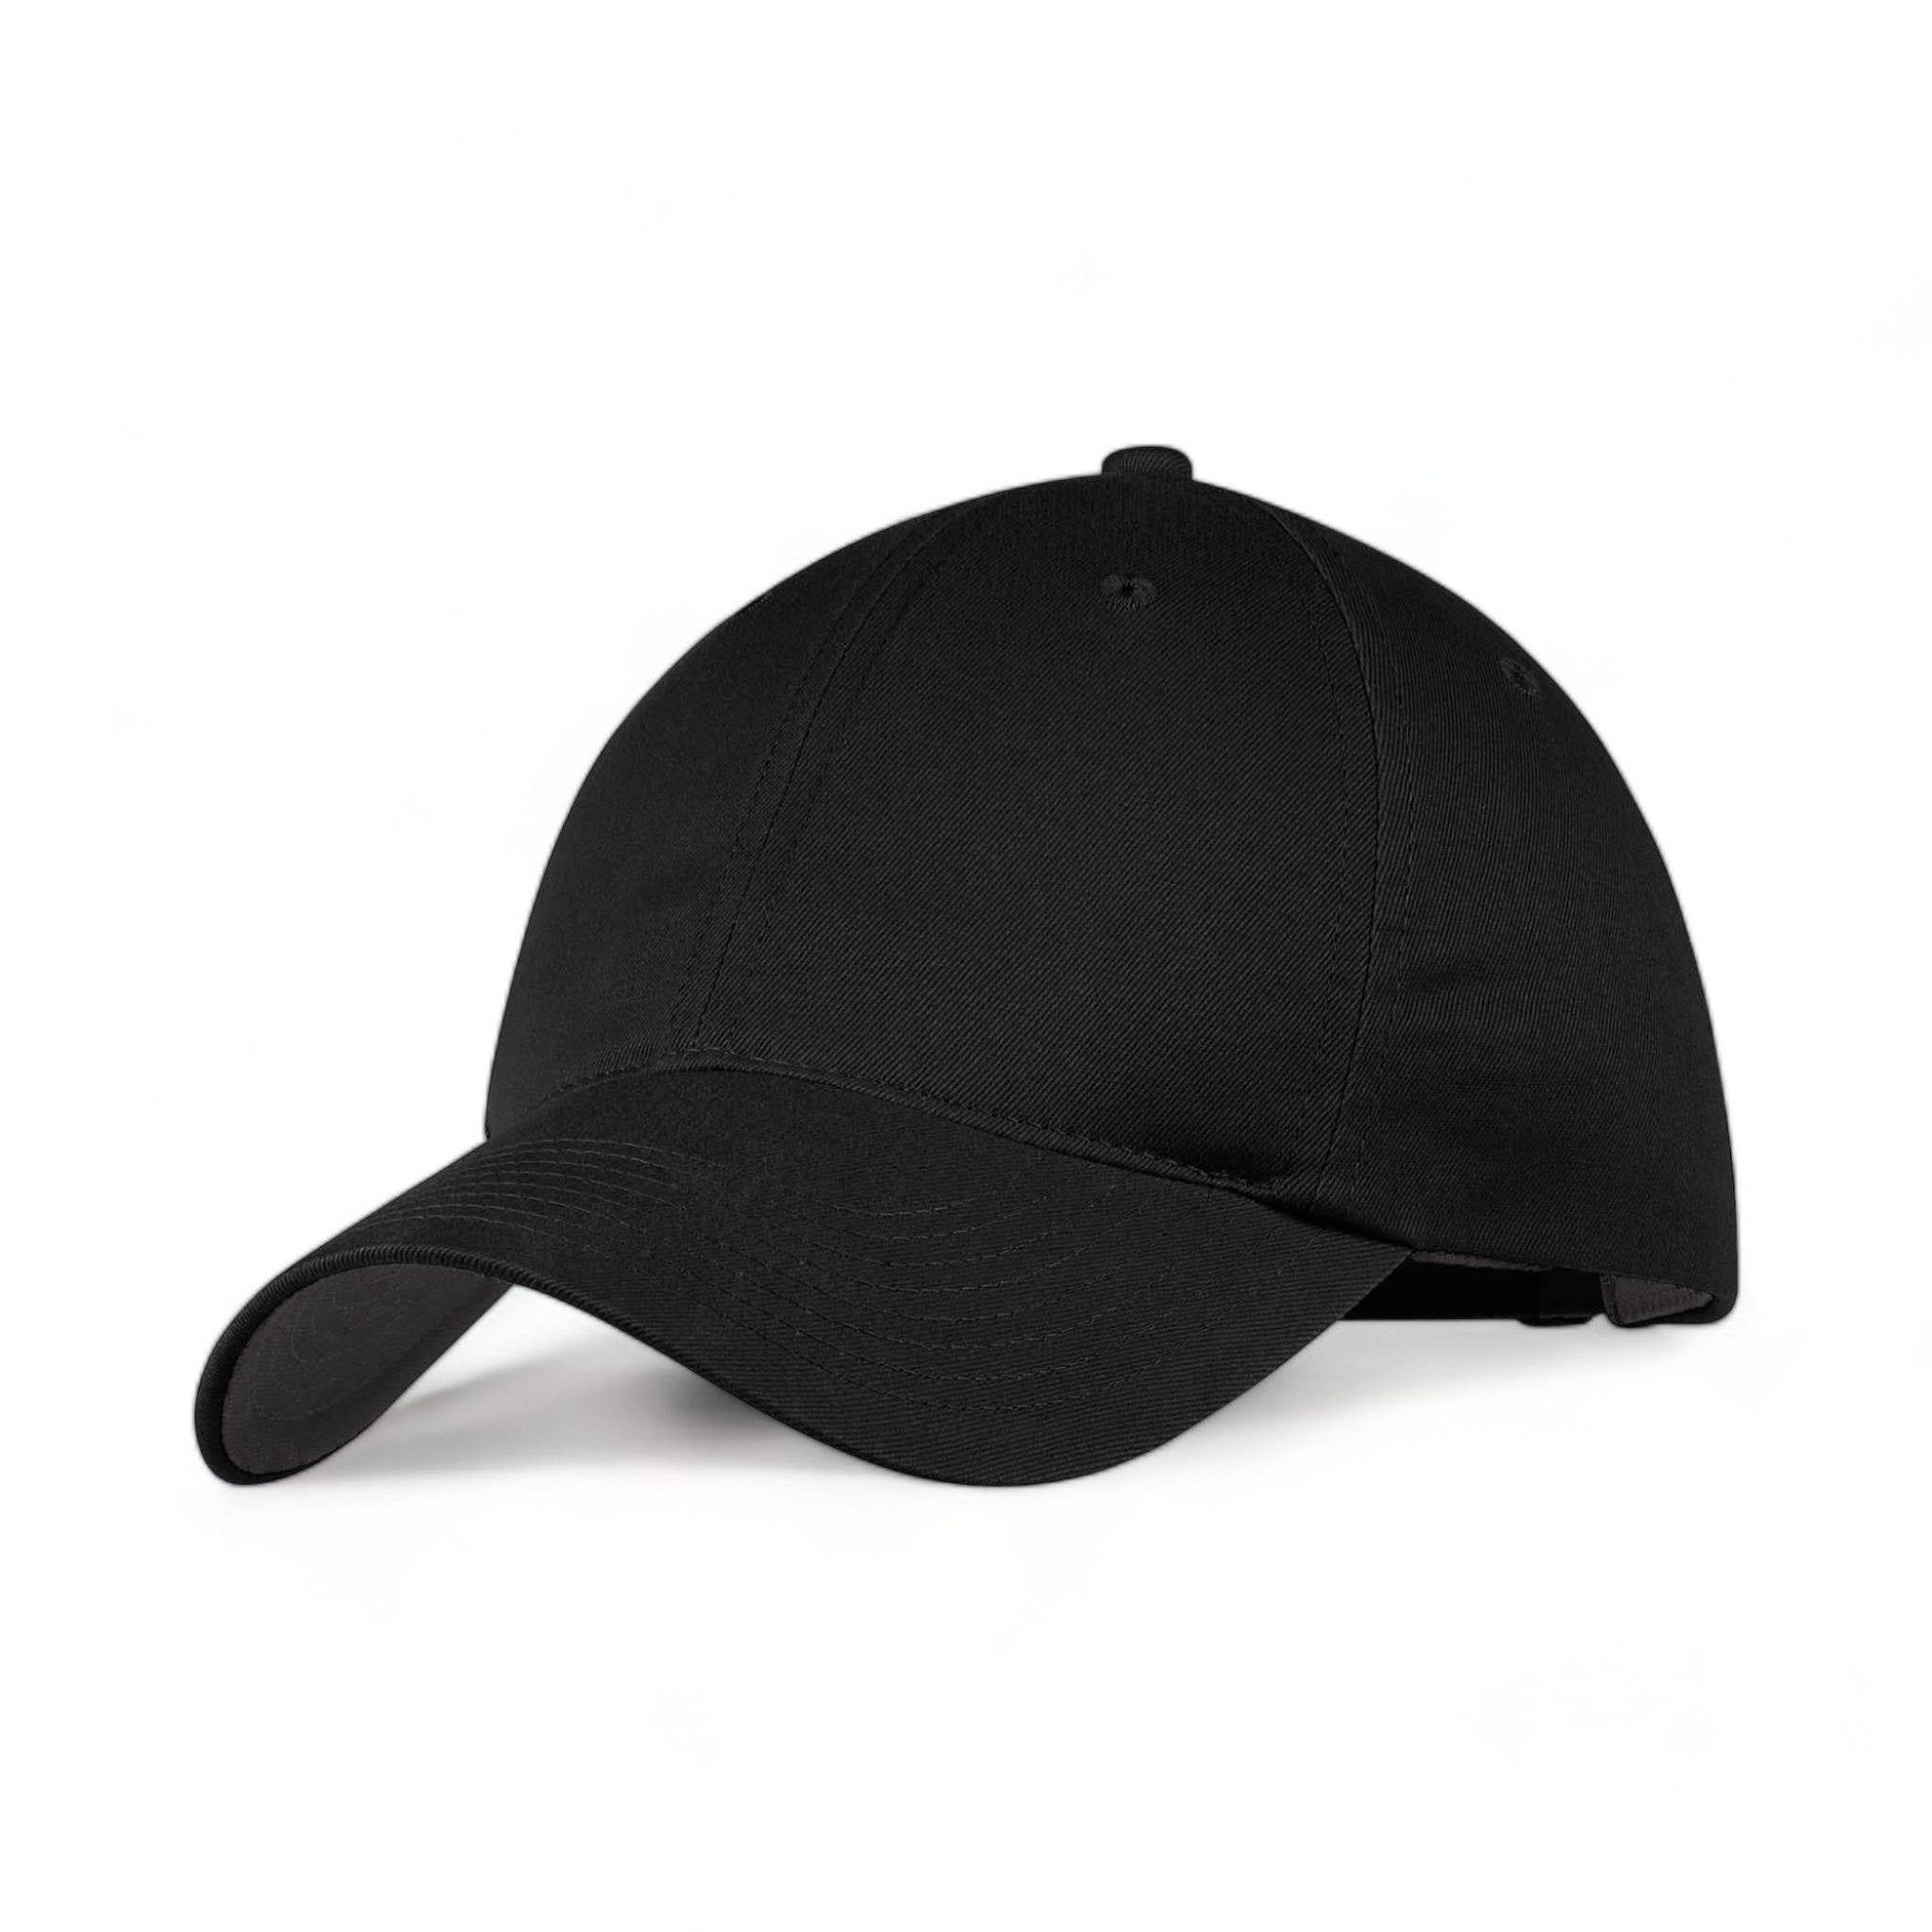 Side view of Nike NKFB6449 custom hat in black